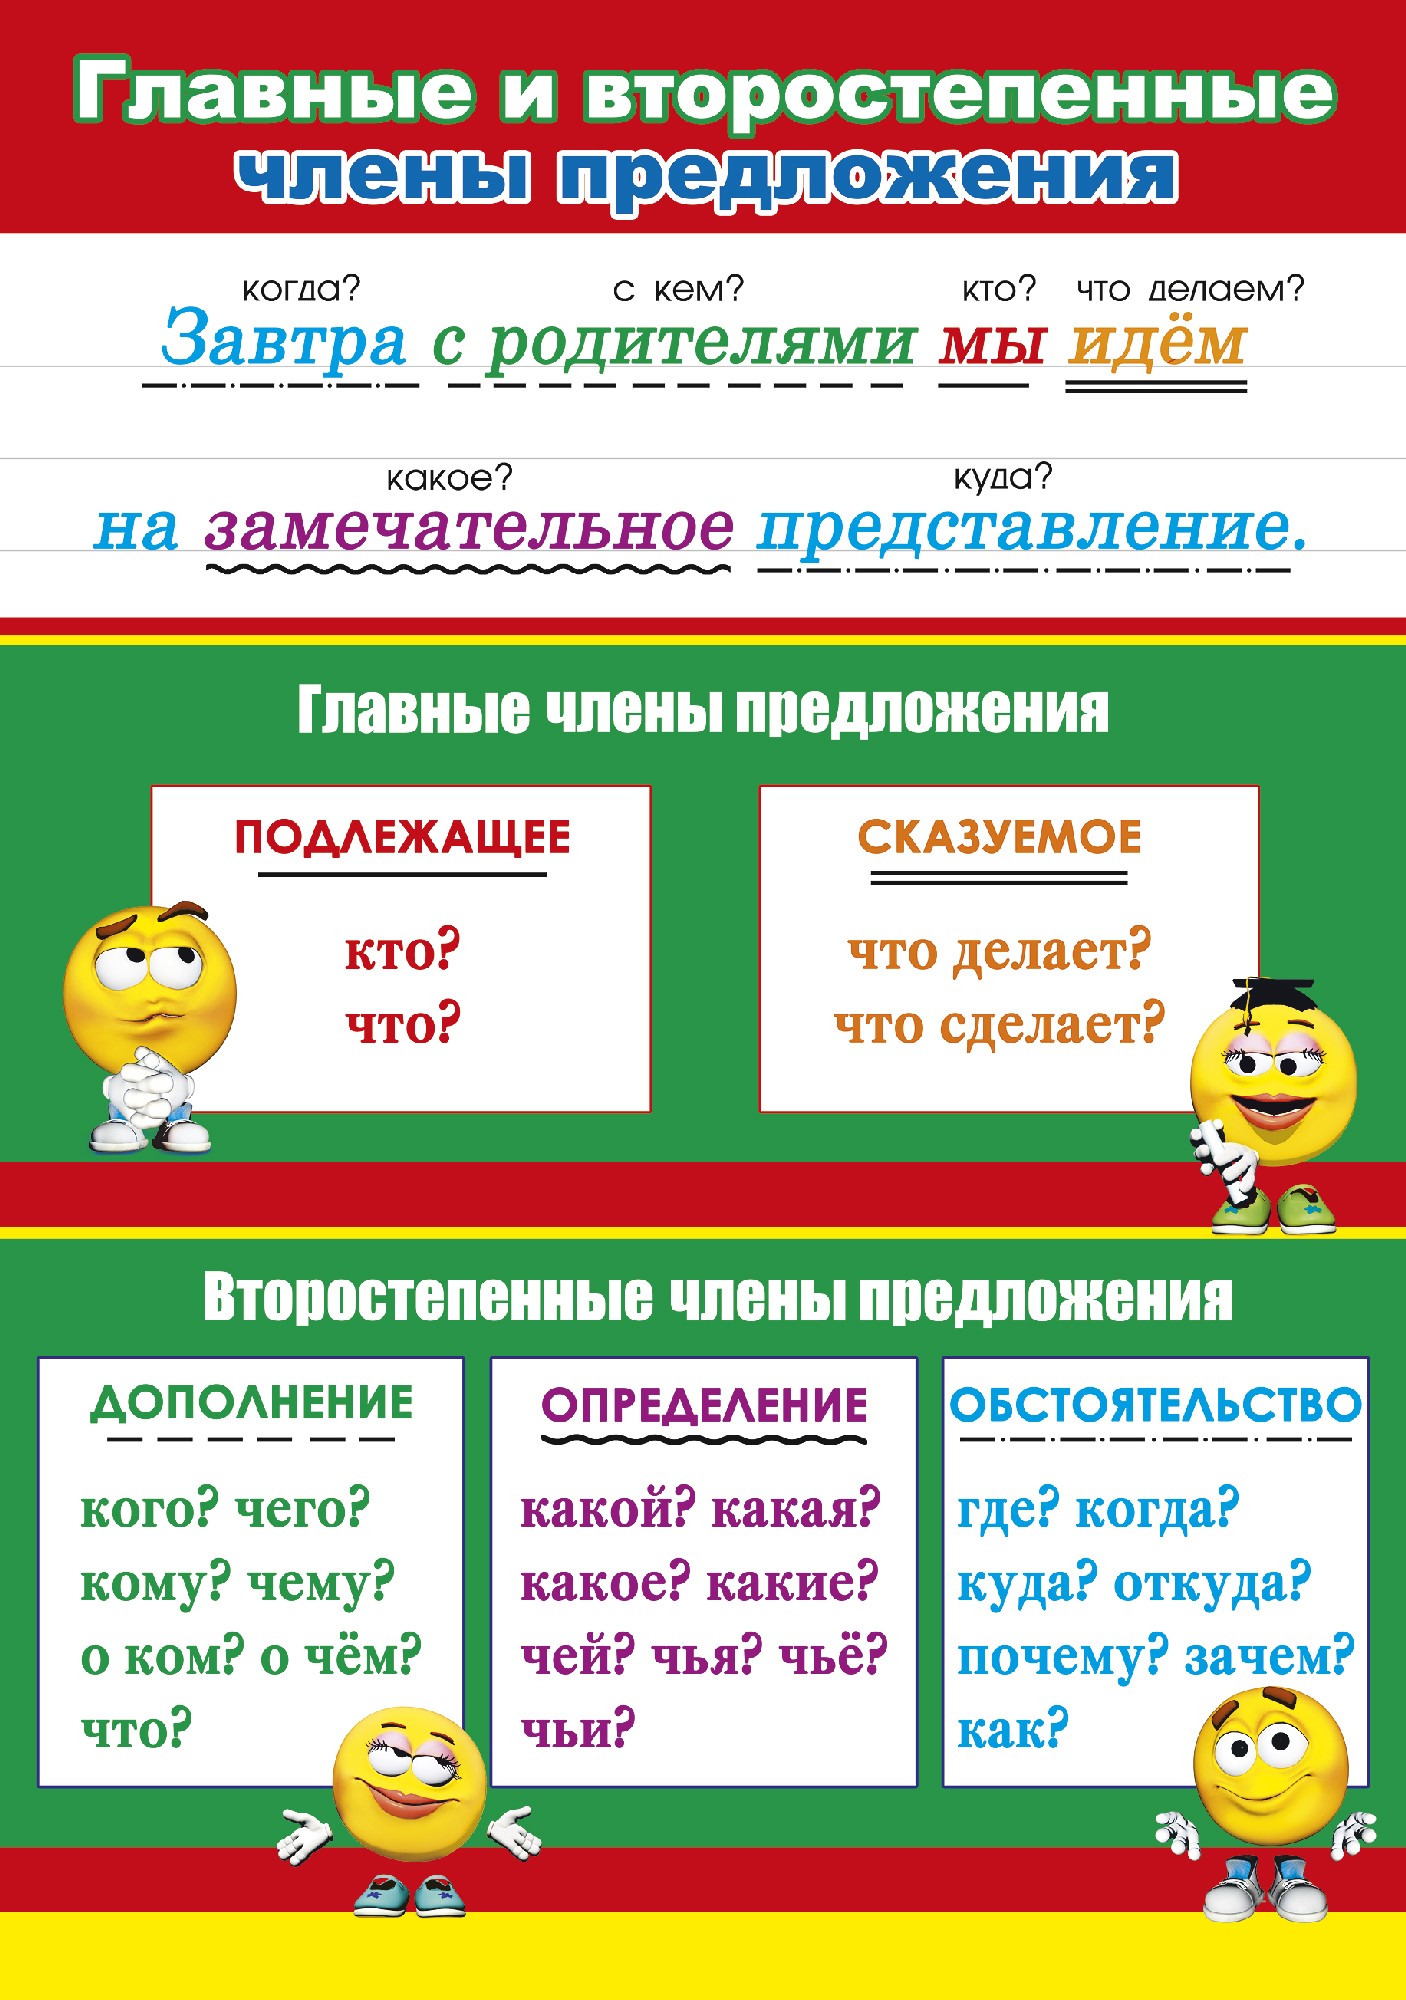 члены речи в руском языке фото 15